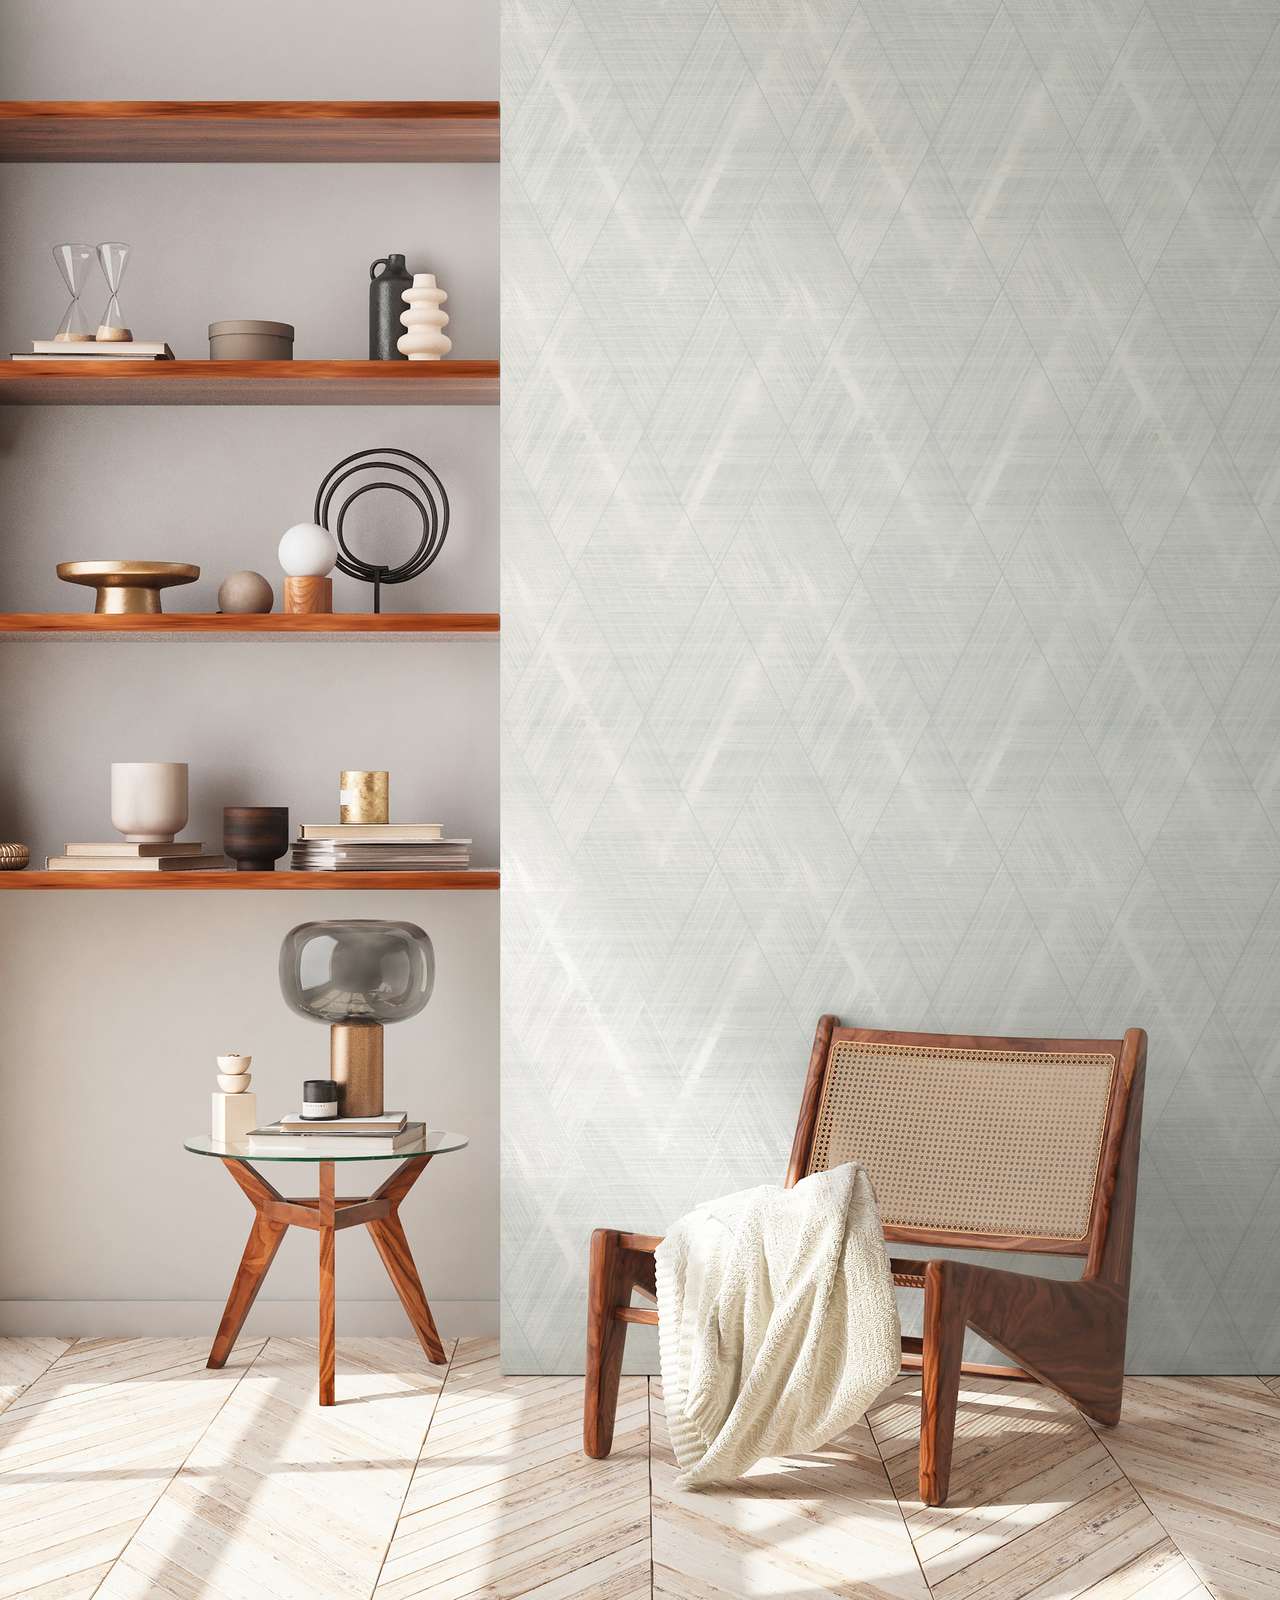             Textile optics wallpaper with diamond pattern - metallic, white
        